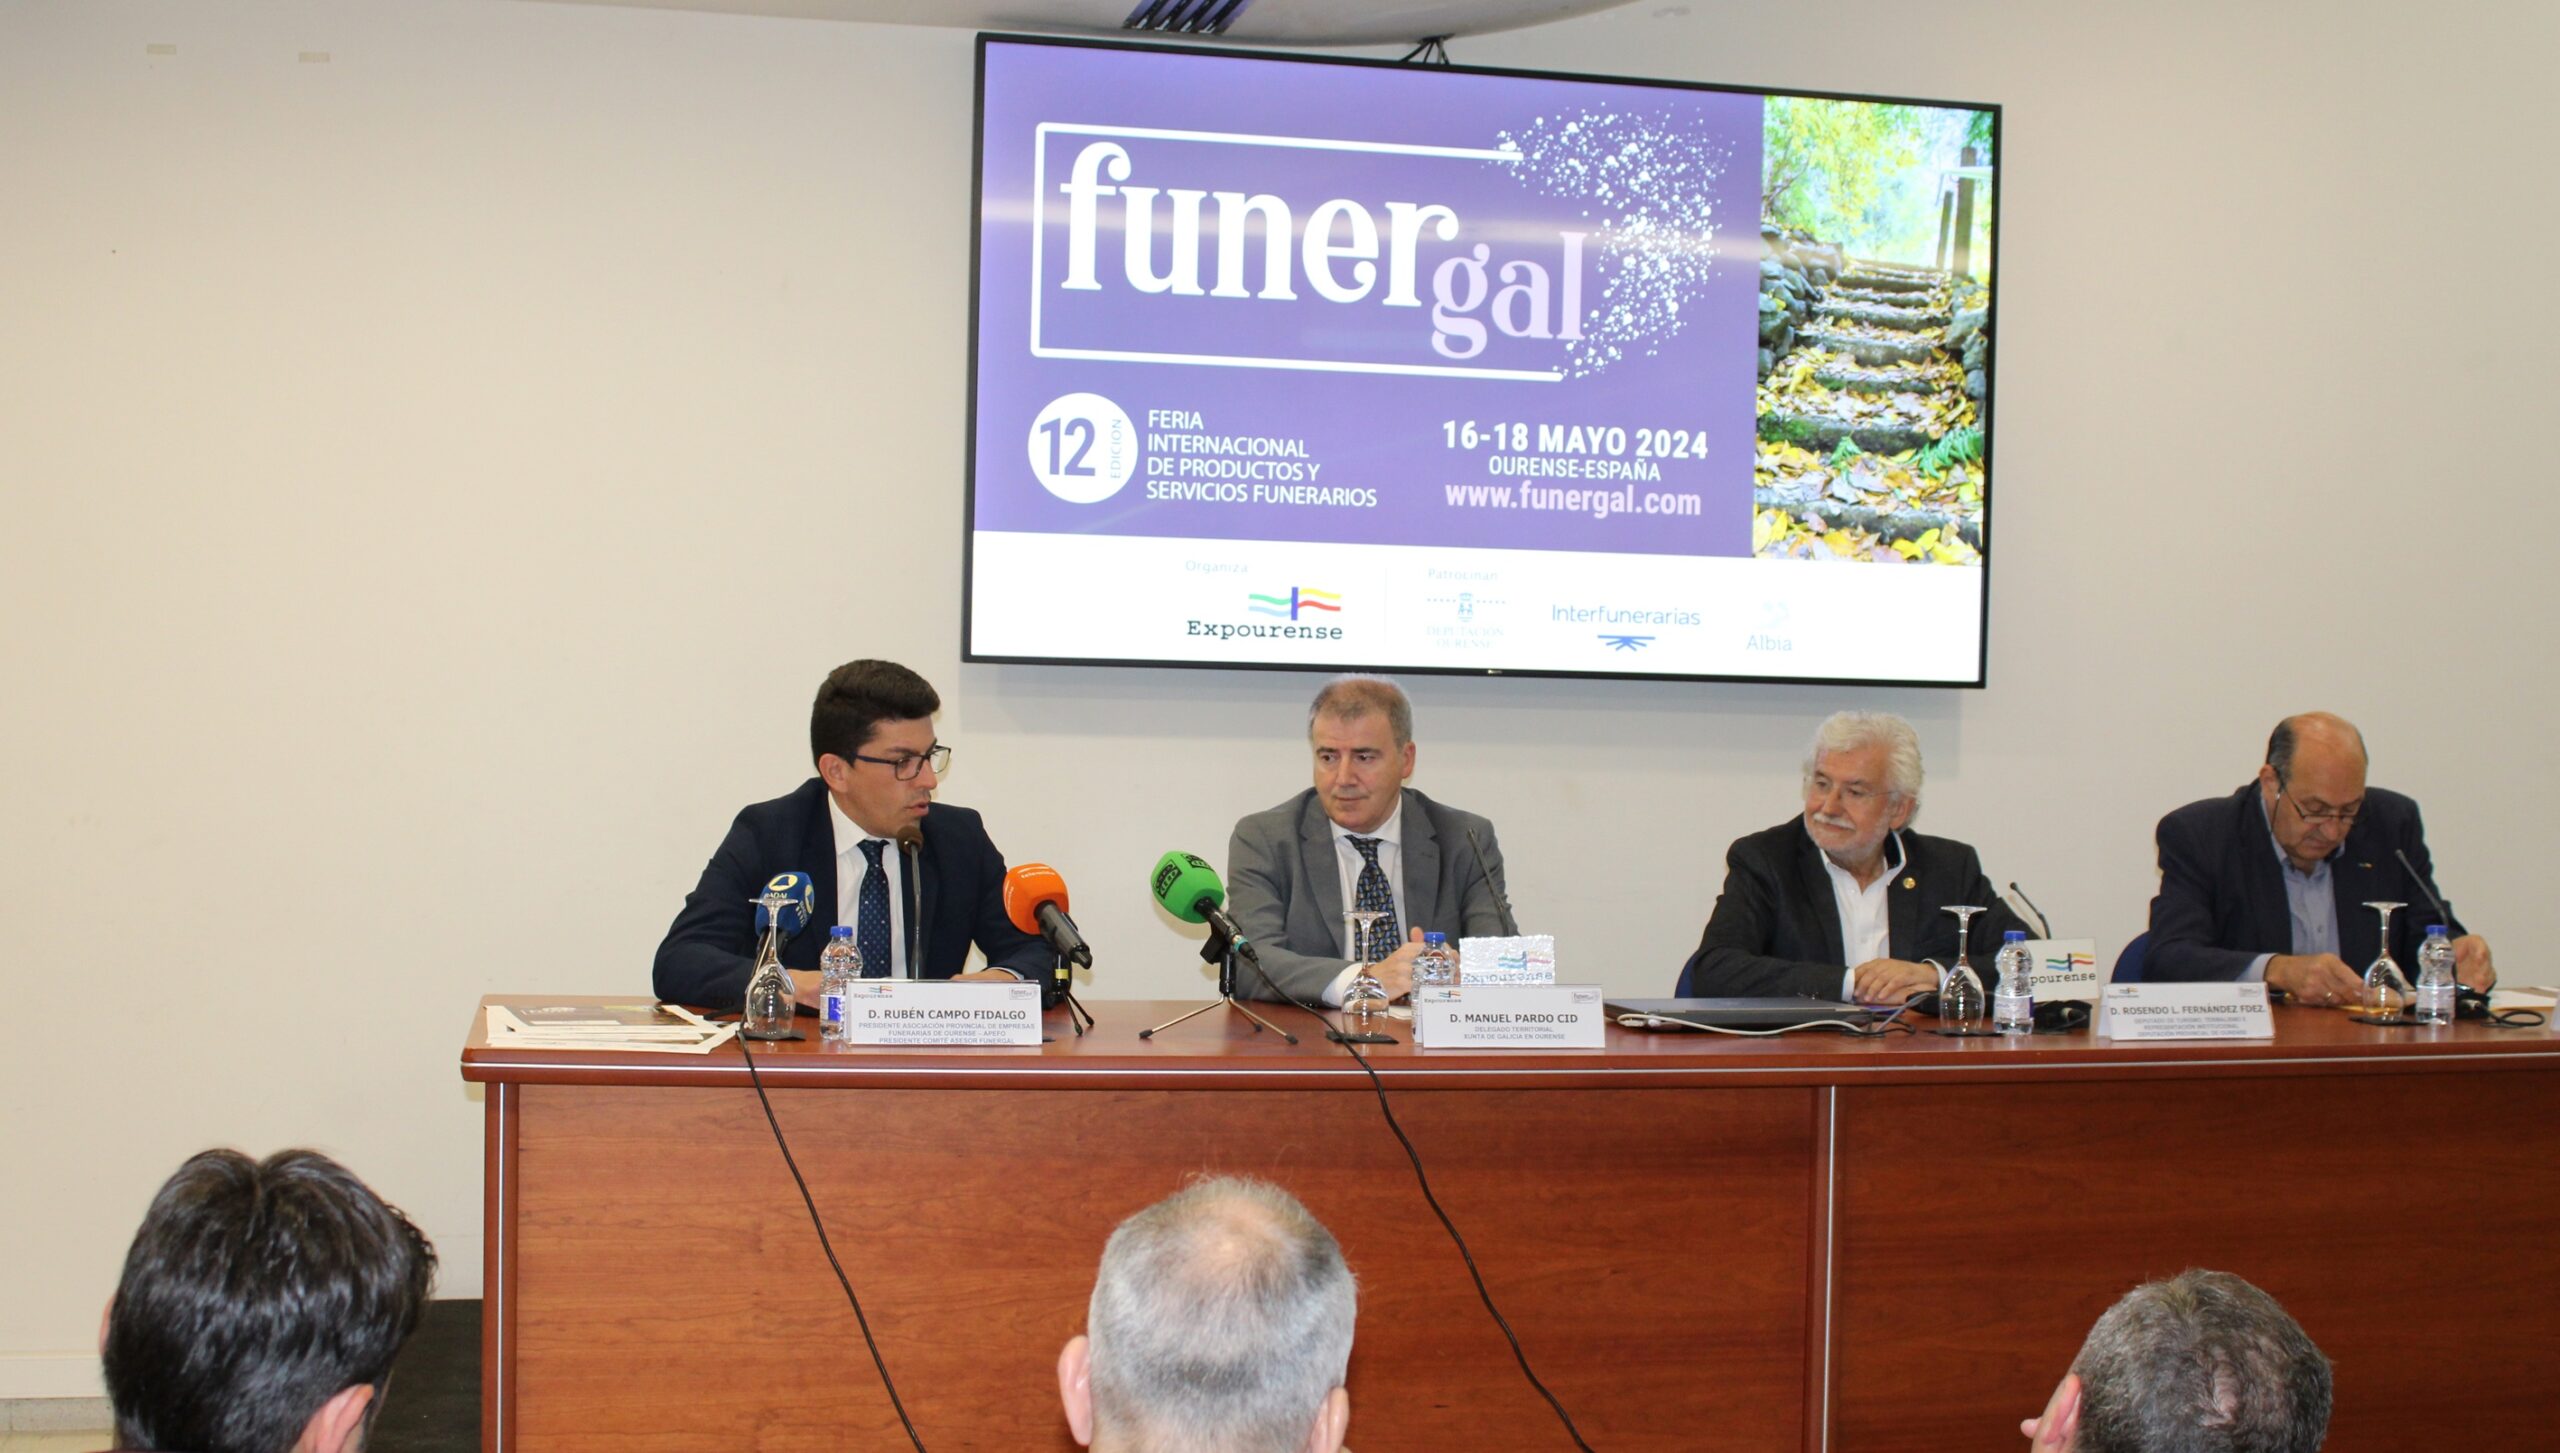 Negocio e información como hilos conductores, Funergal el punto de encuentro del sector funerario en 2024